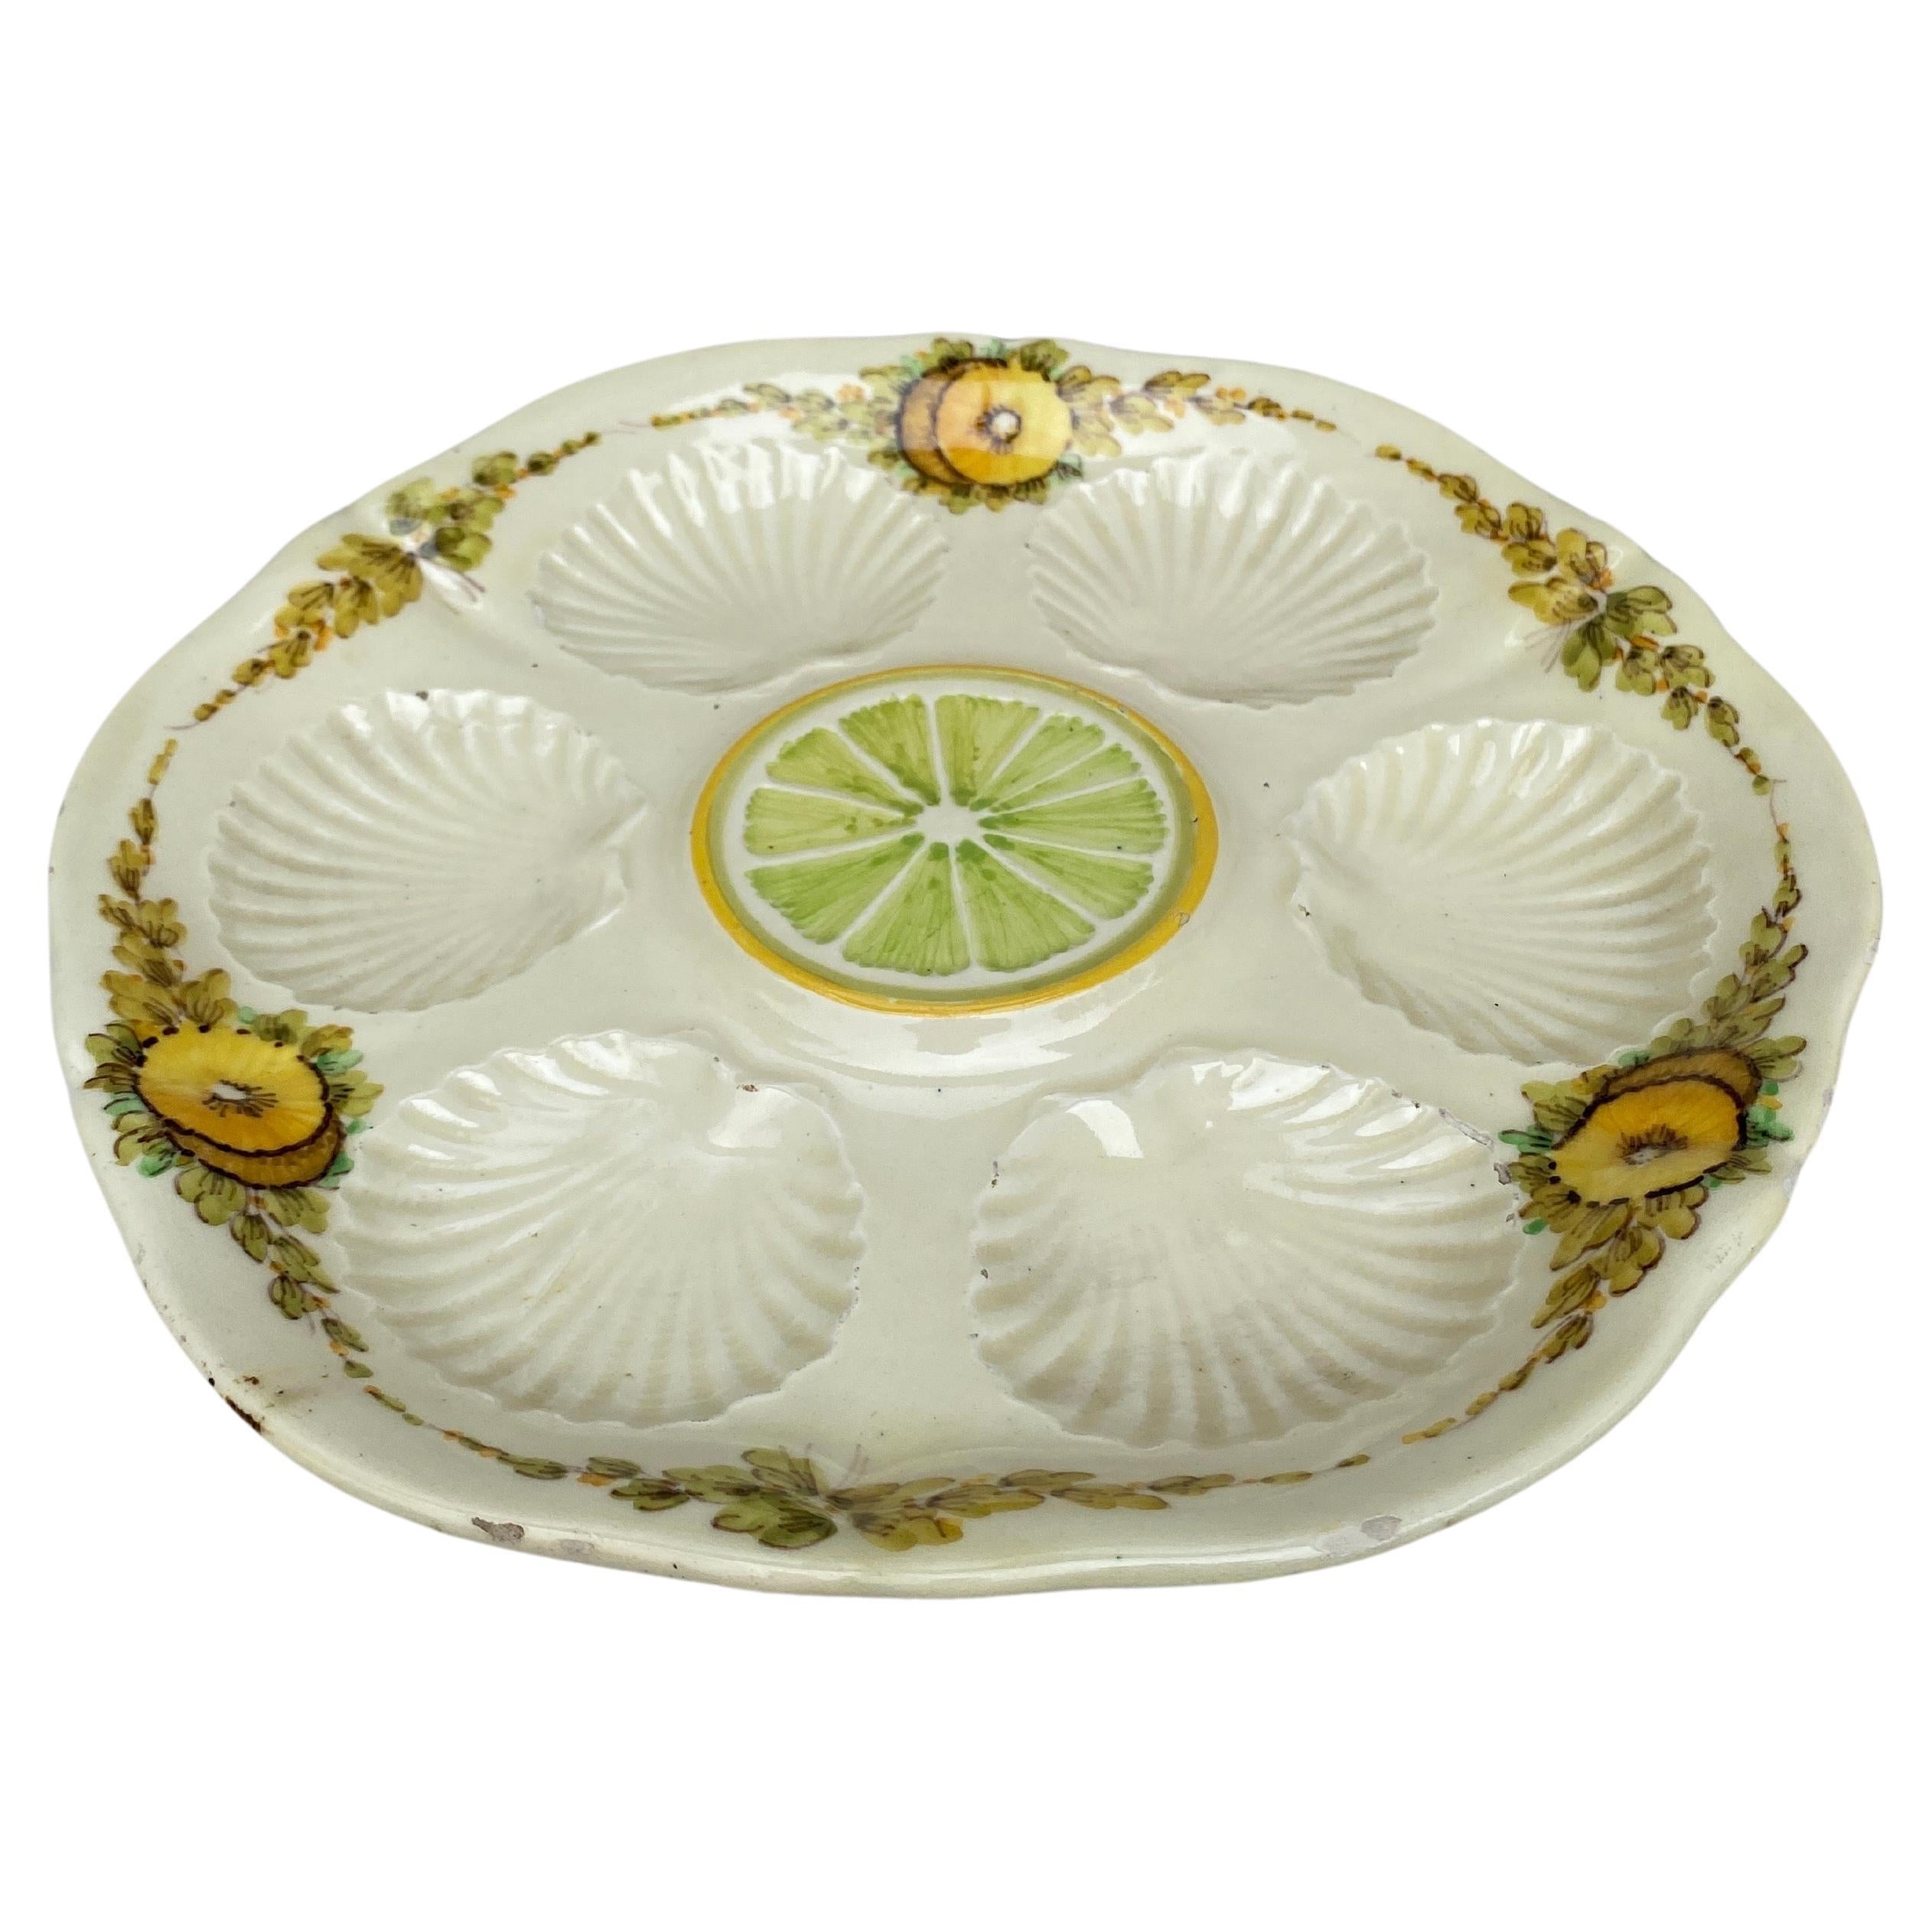 Assiette à huîtres inhabituelle en majolique française avec des fleurs jaunes et du citron au centre, vers 1890.